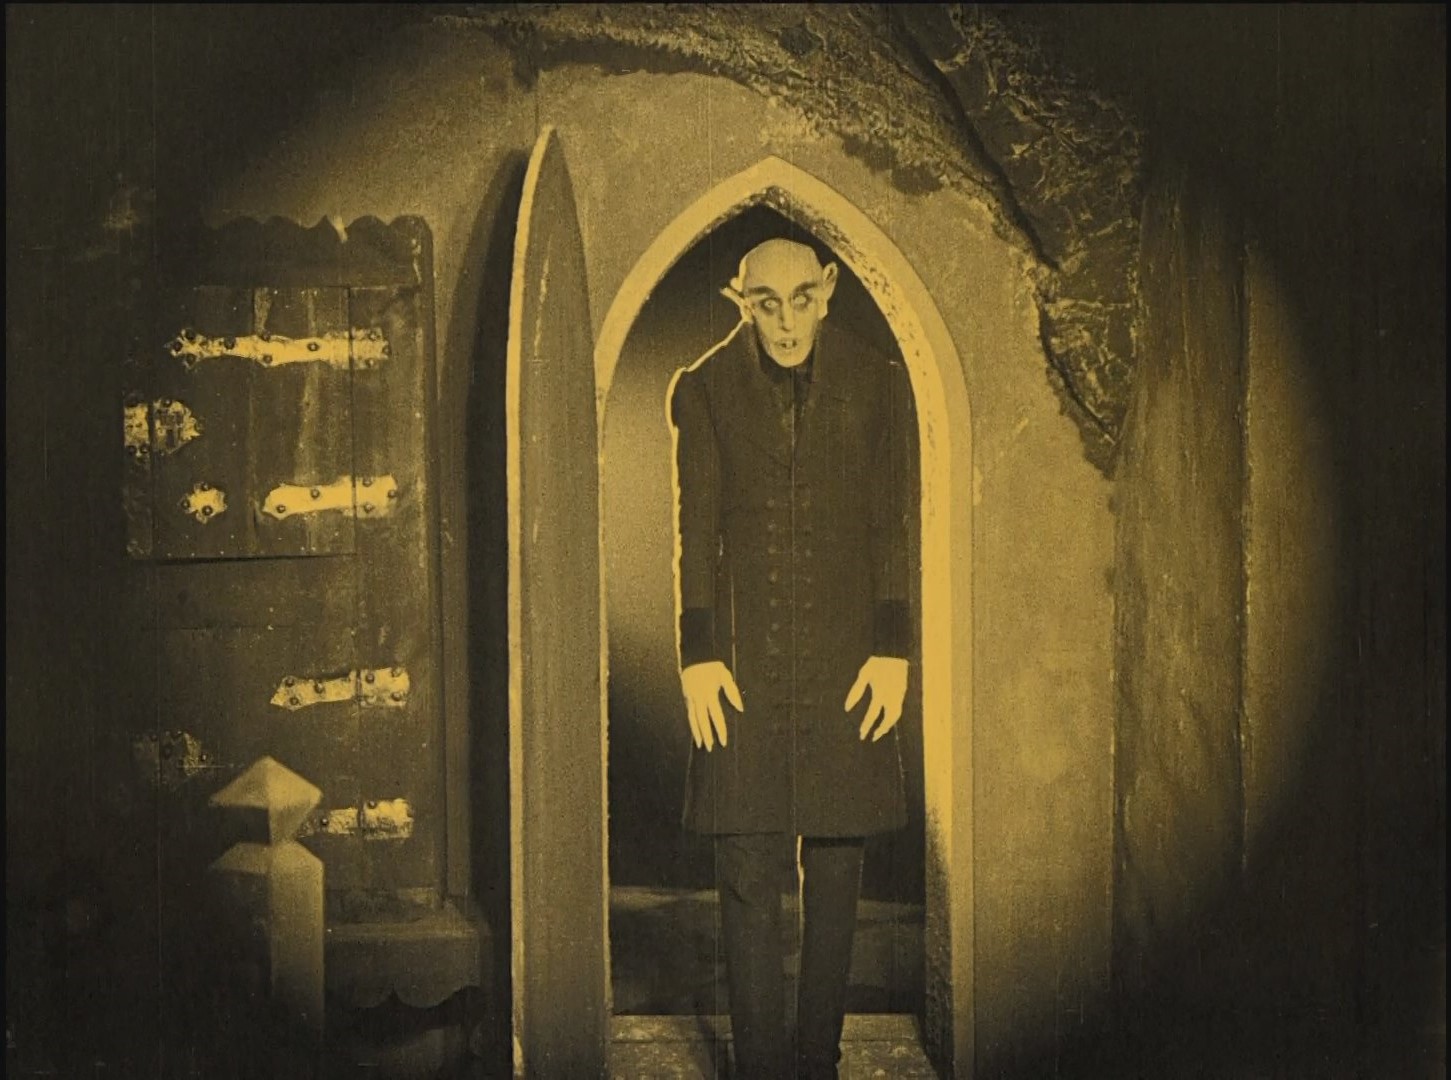 Max Schreck dans le film Nosferatu Eine Symphonie des Grauens (Nosferatu, une symphonie de l'horreur, 1922) de Friedrich Wilhelm Murnau